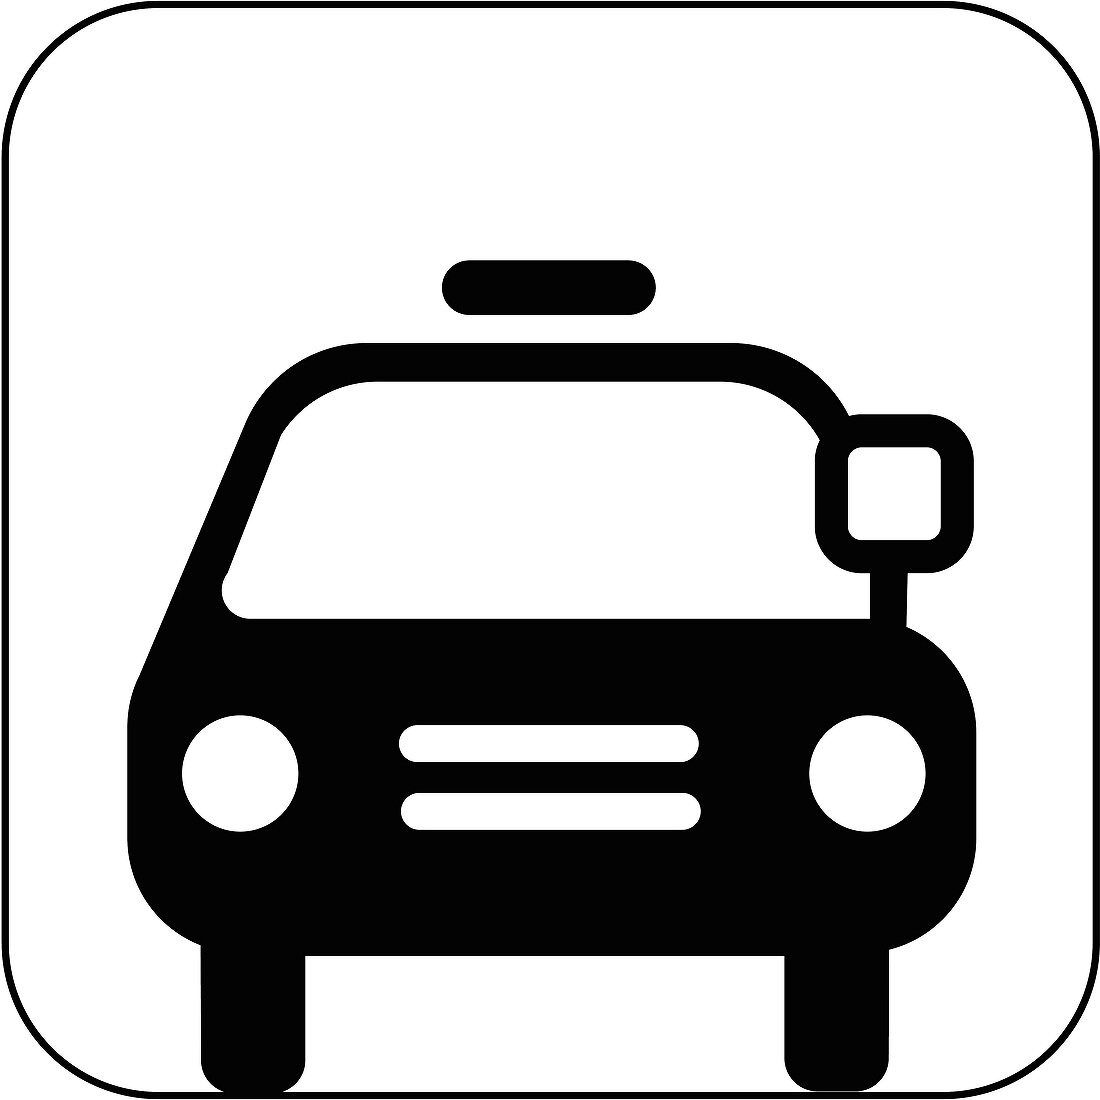 Taxi symbol,artwork